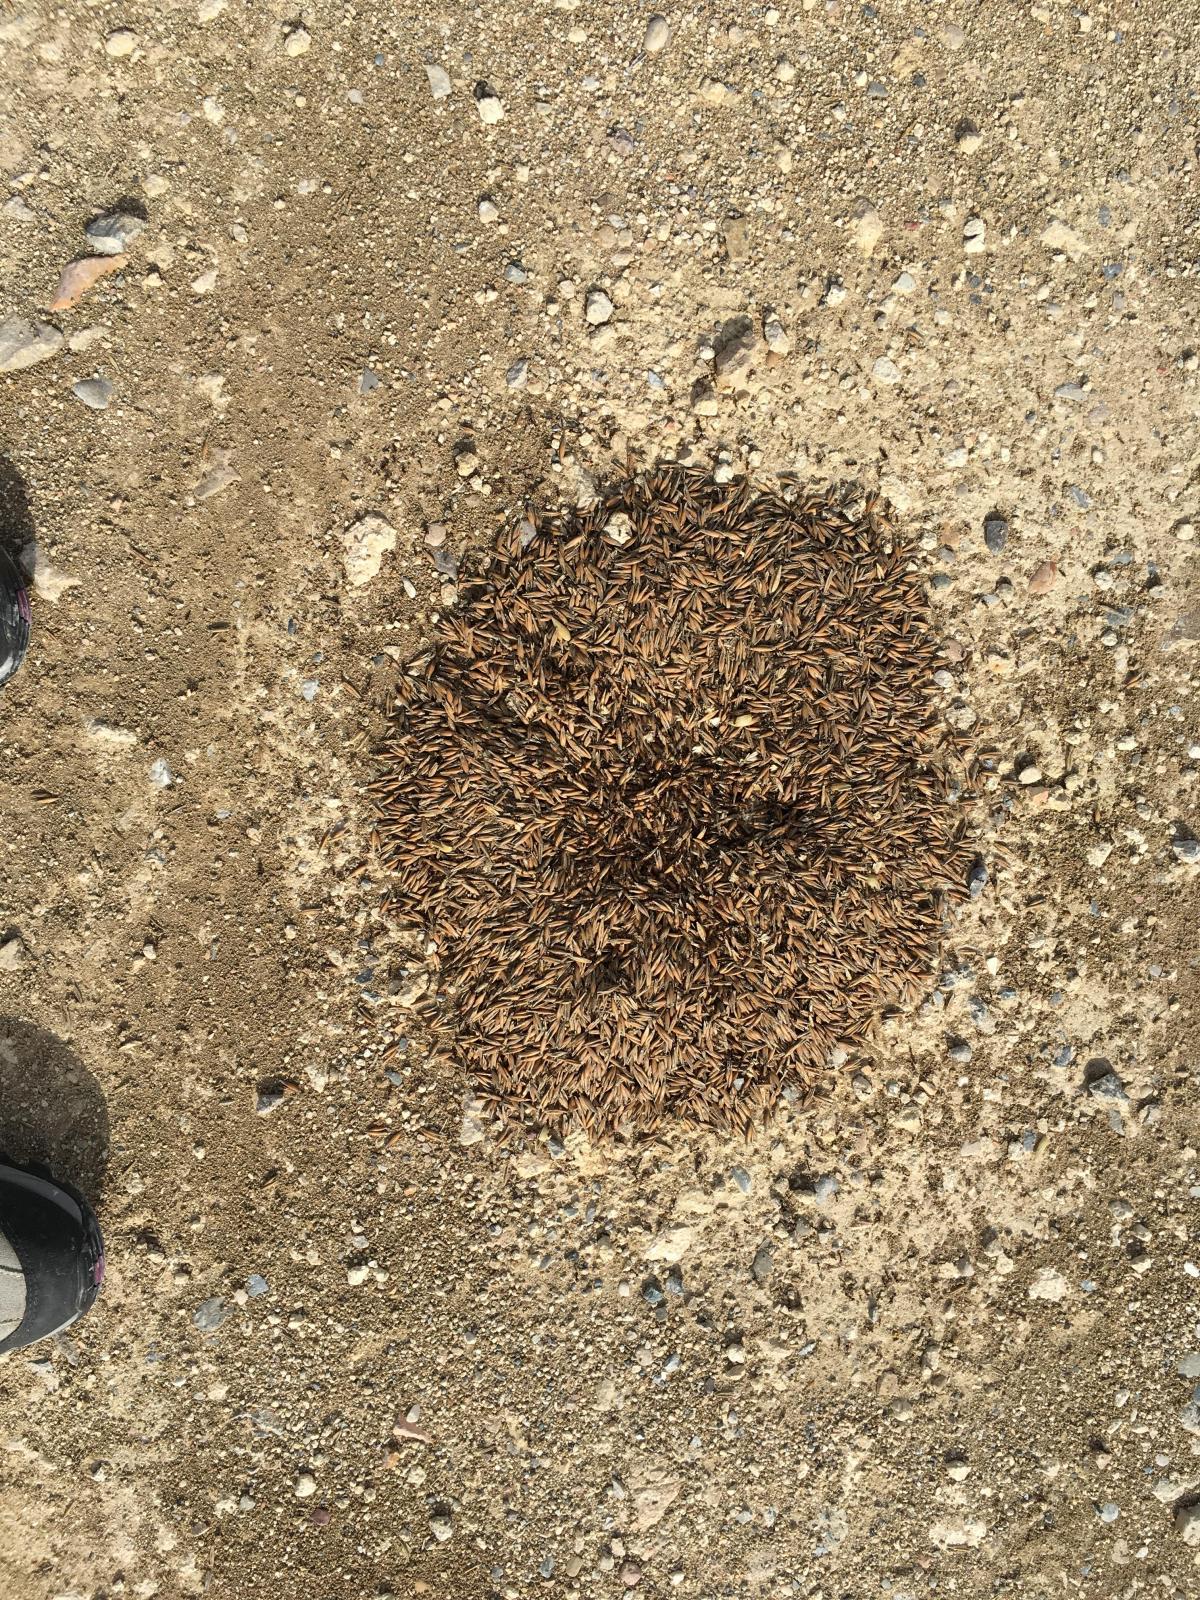 Il magico mondo delle formiche 